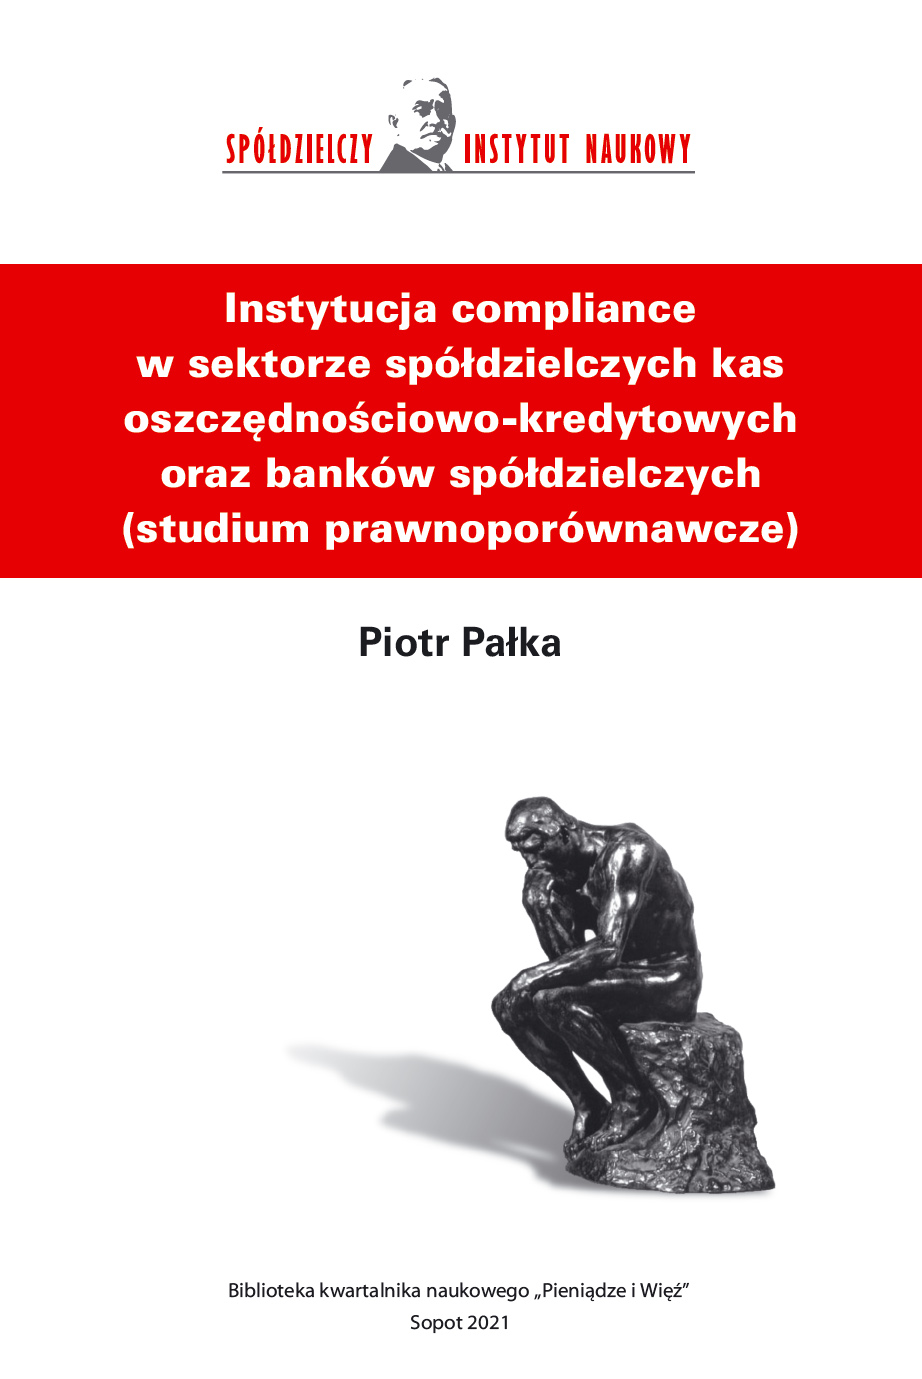 Instytucja compliance w sektorze spółdzielczych kas ... - Piotr Pałka